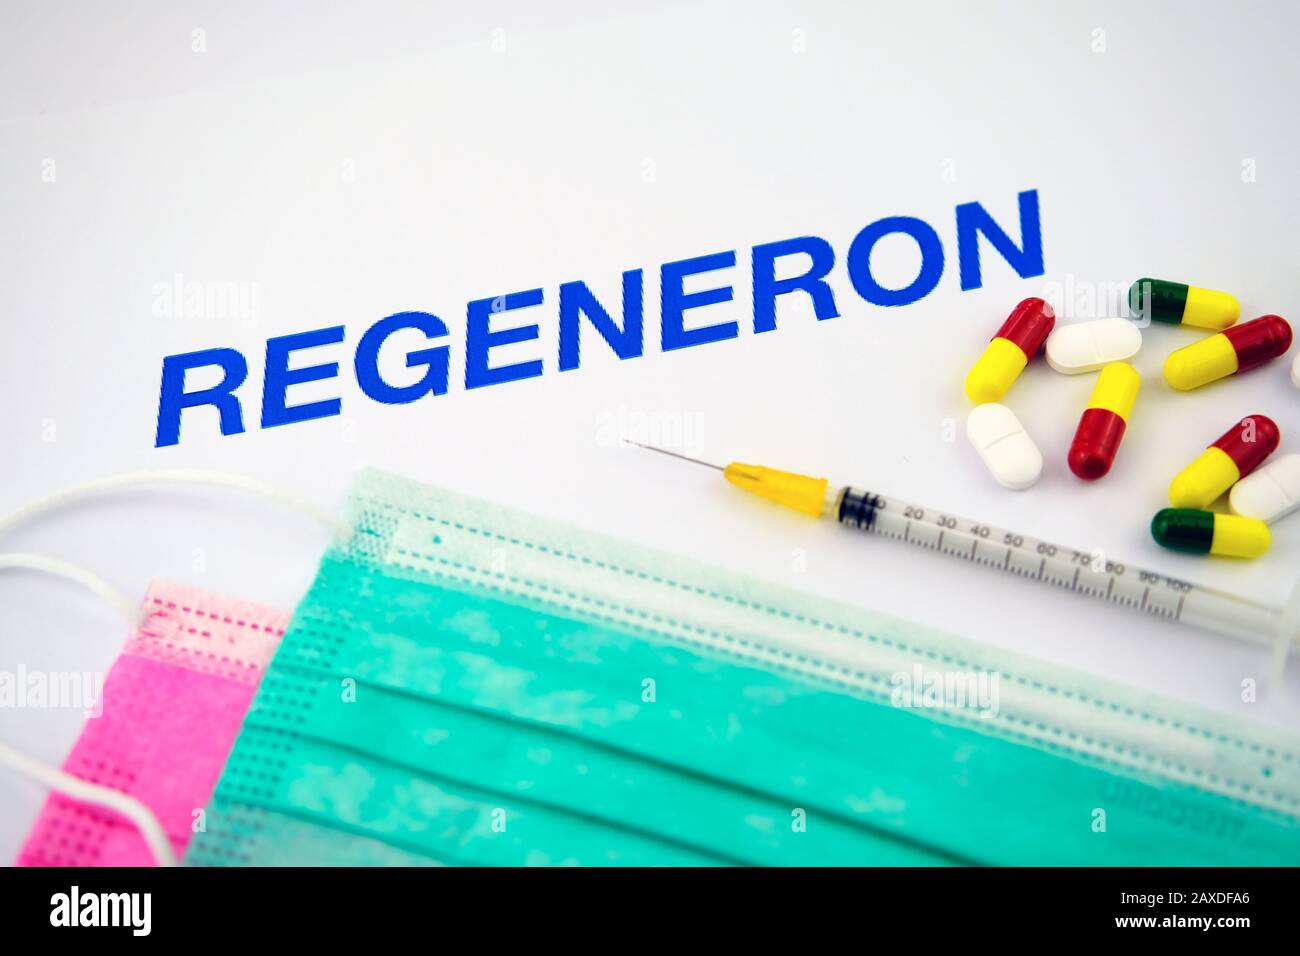 Regeneron ist ein führendes Biotechnologieunternehmen, das die Macht der Wissenschaft nutzt, um neue Medikamente für bedürftige Patienten zu bringen. Konzeptfoto Stockfoto